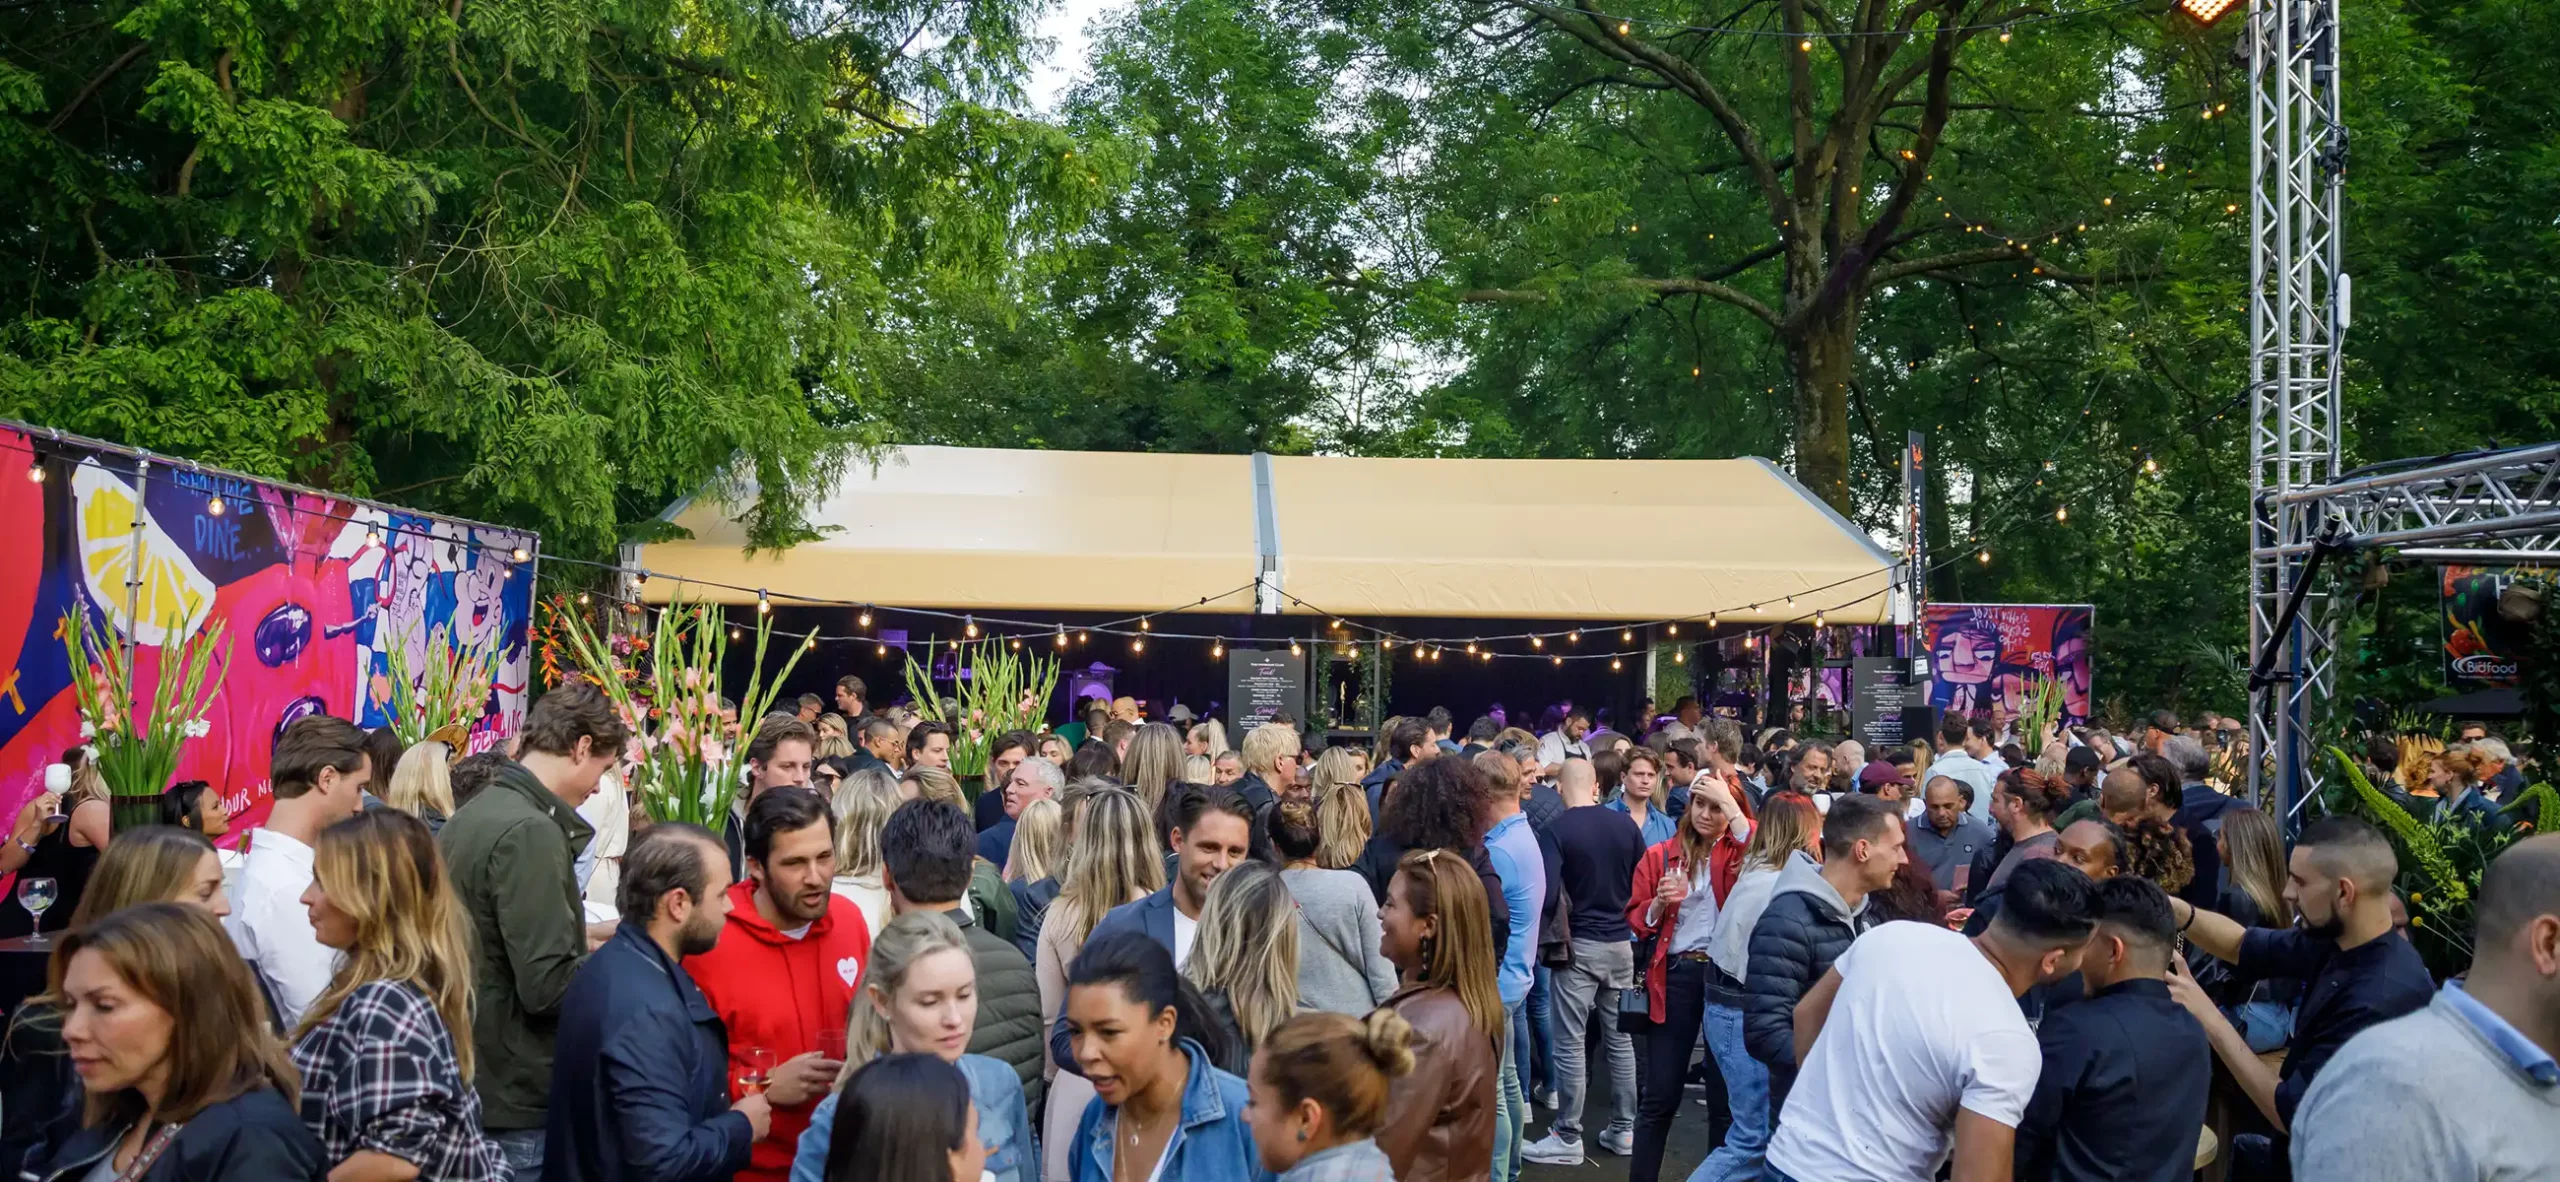 Partyzelt Alu, VIP von Zeltverleih Intersettle auf einem Stadt Festival - zelte für öffentliche Veranstaltung